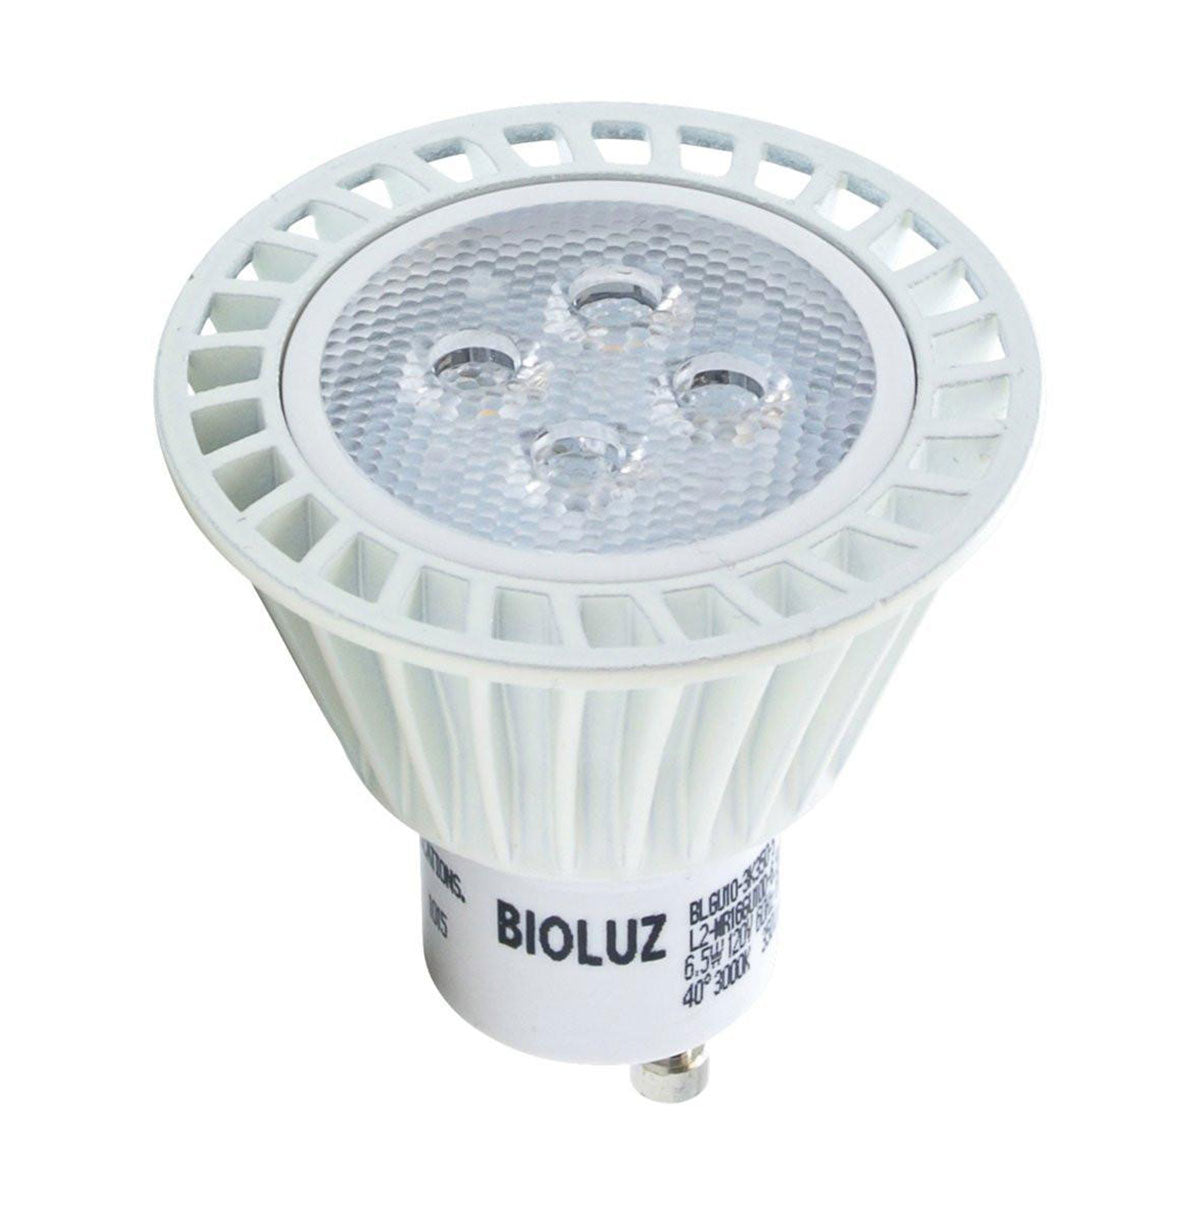 afrikansk Albany Synslinie Bioluz LED Dimmable GU10 LED Bulbs